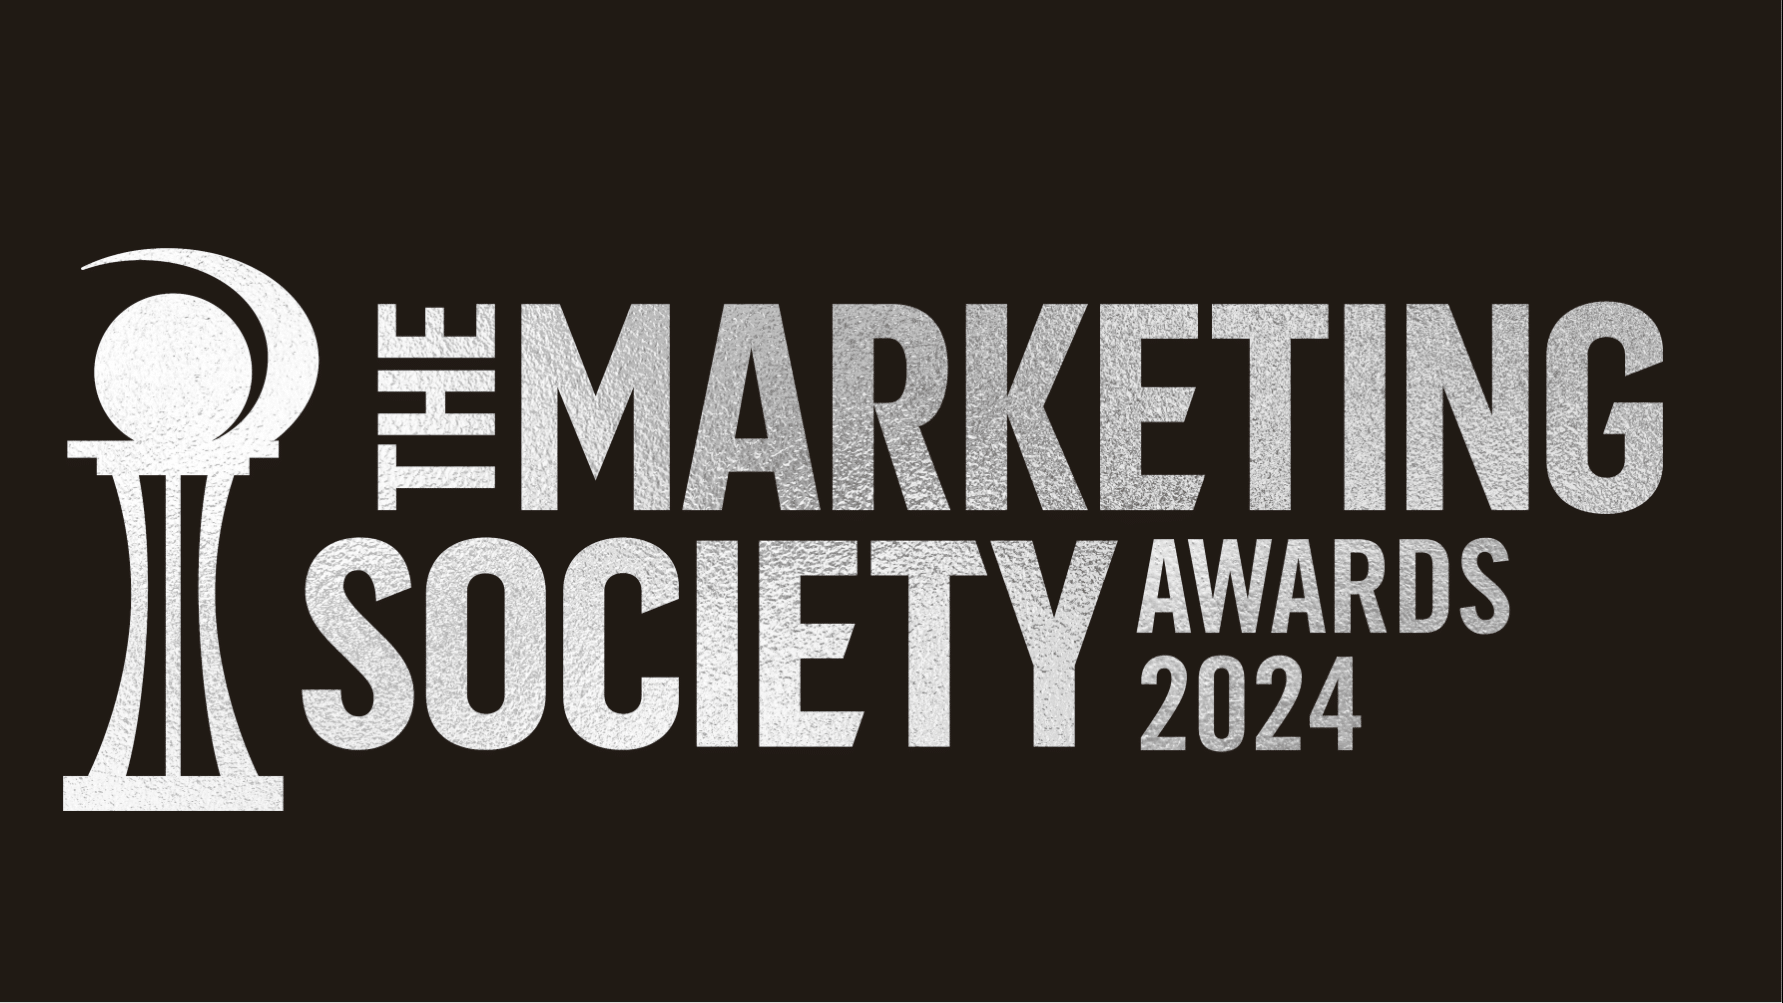 The Marketing Society Awards